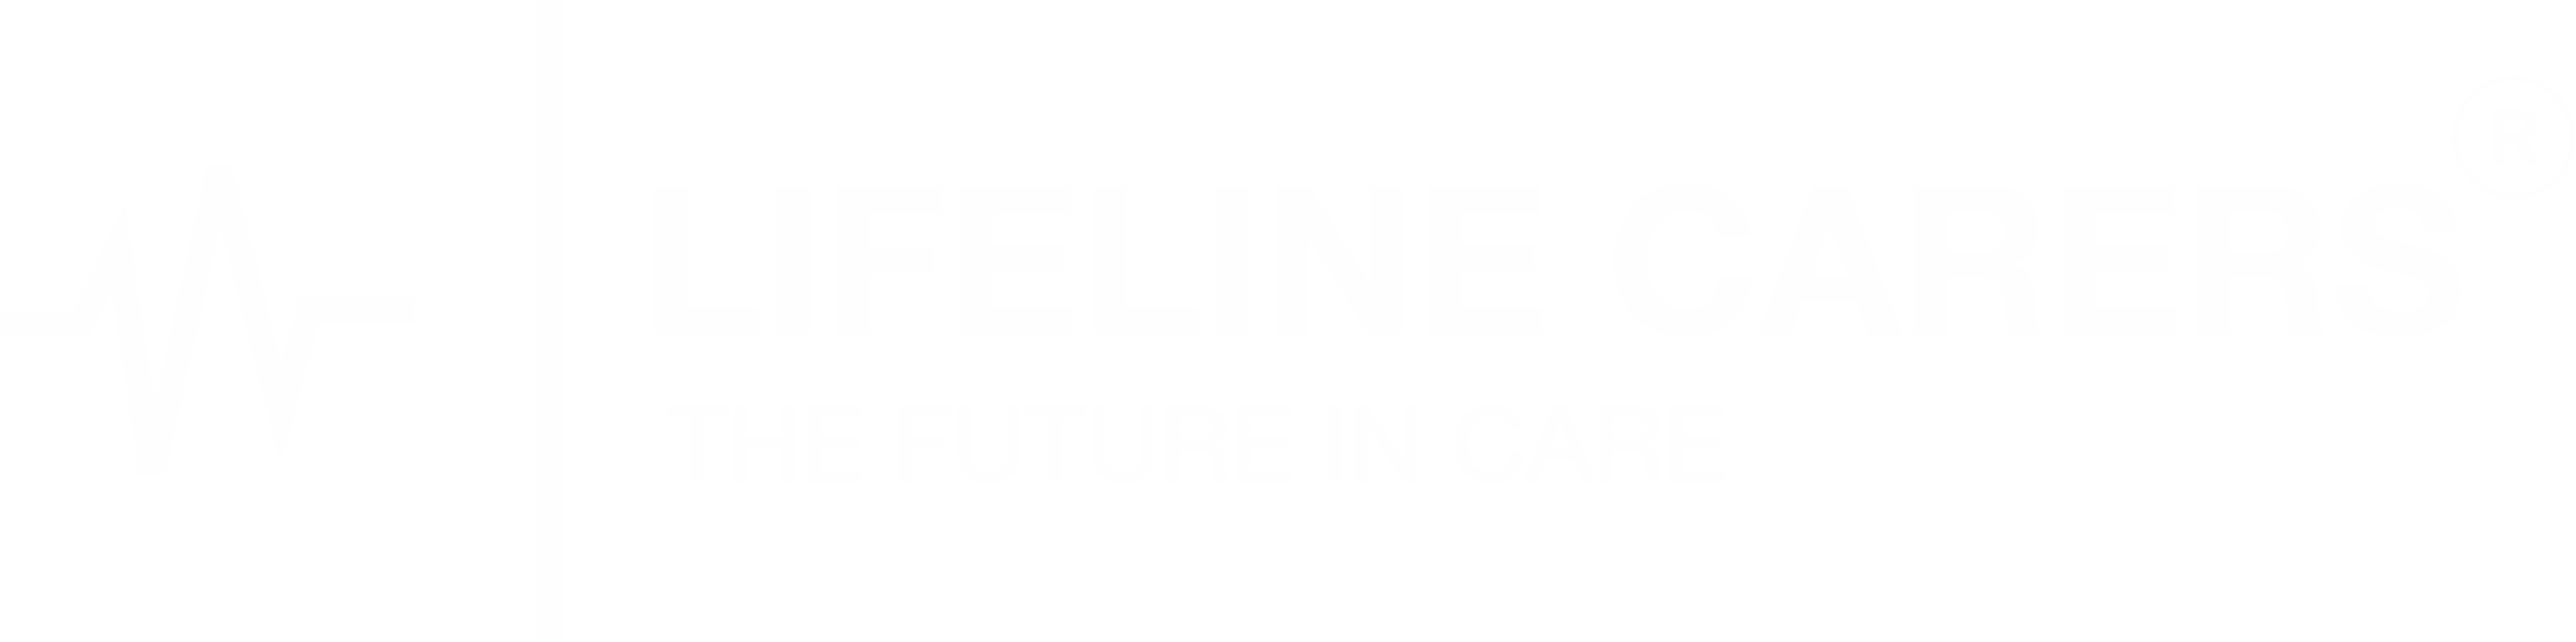 lifeline care